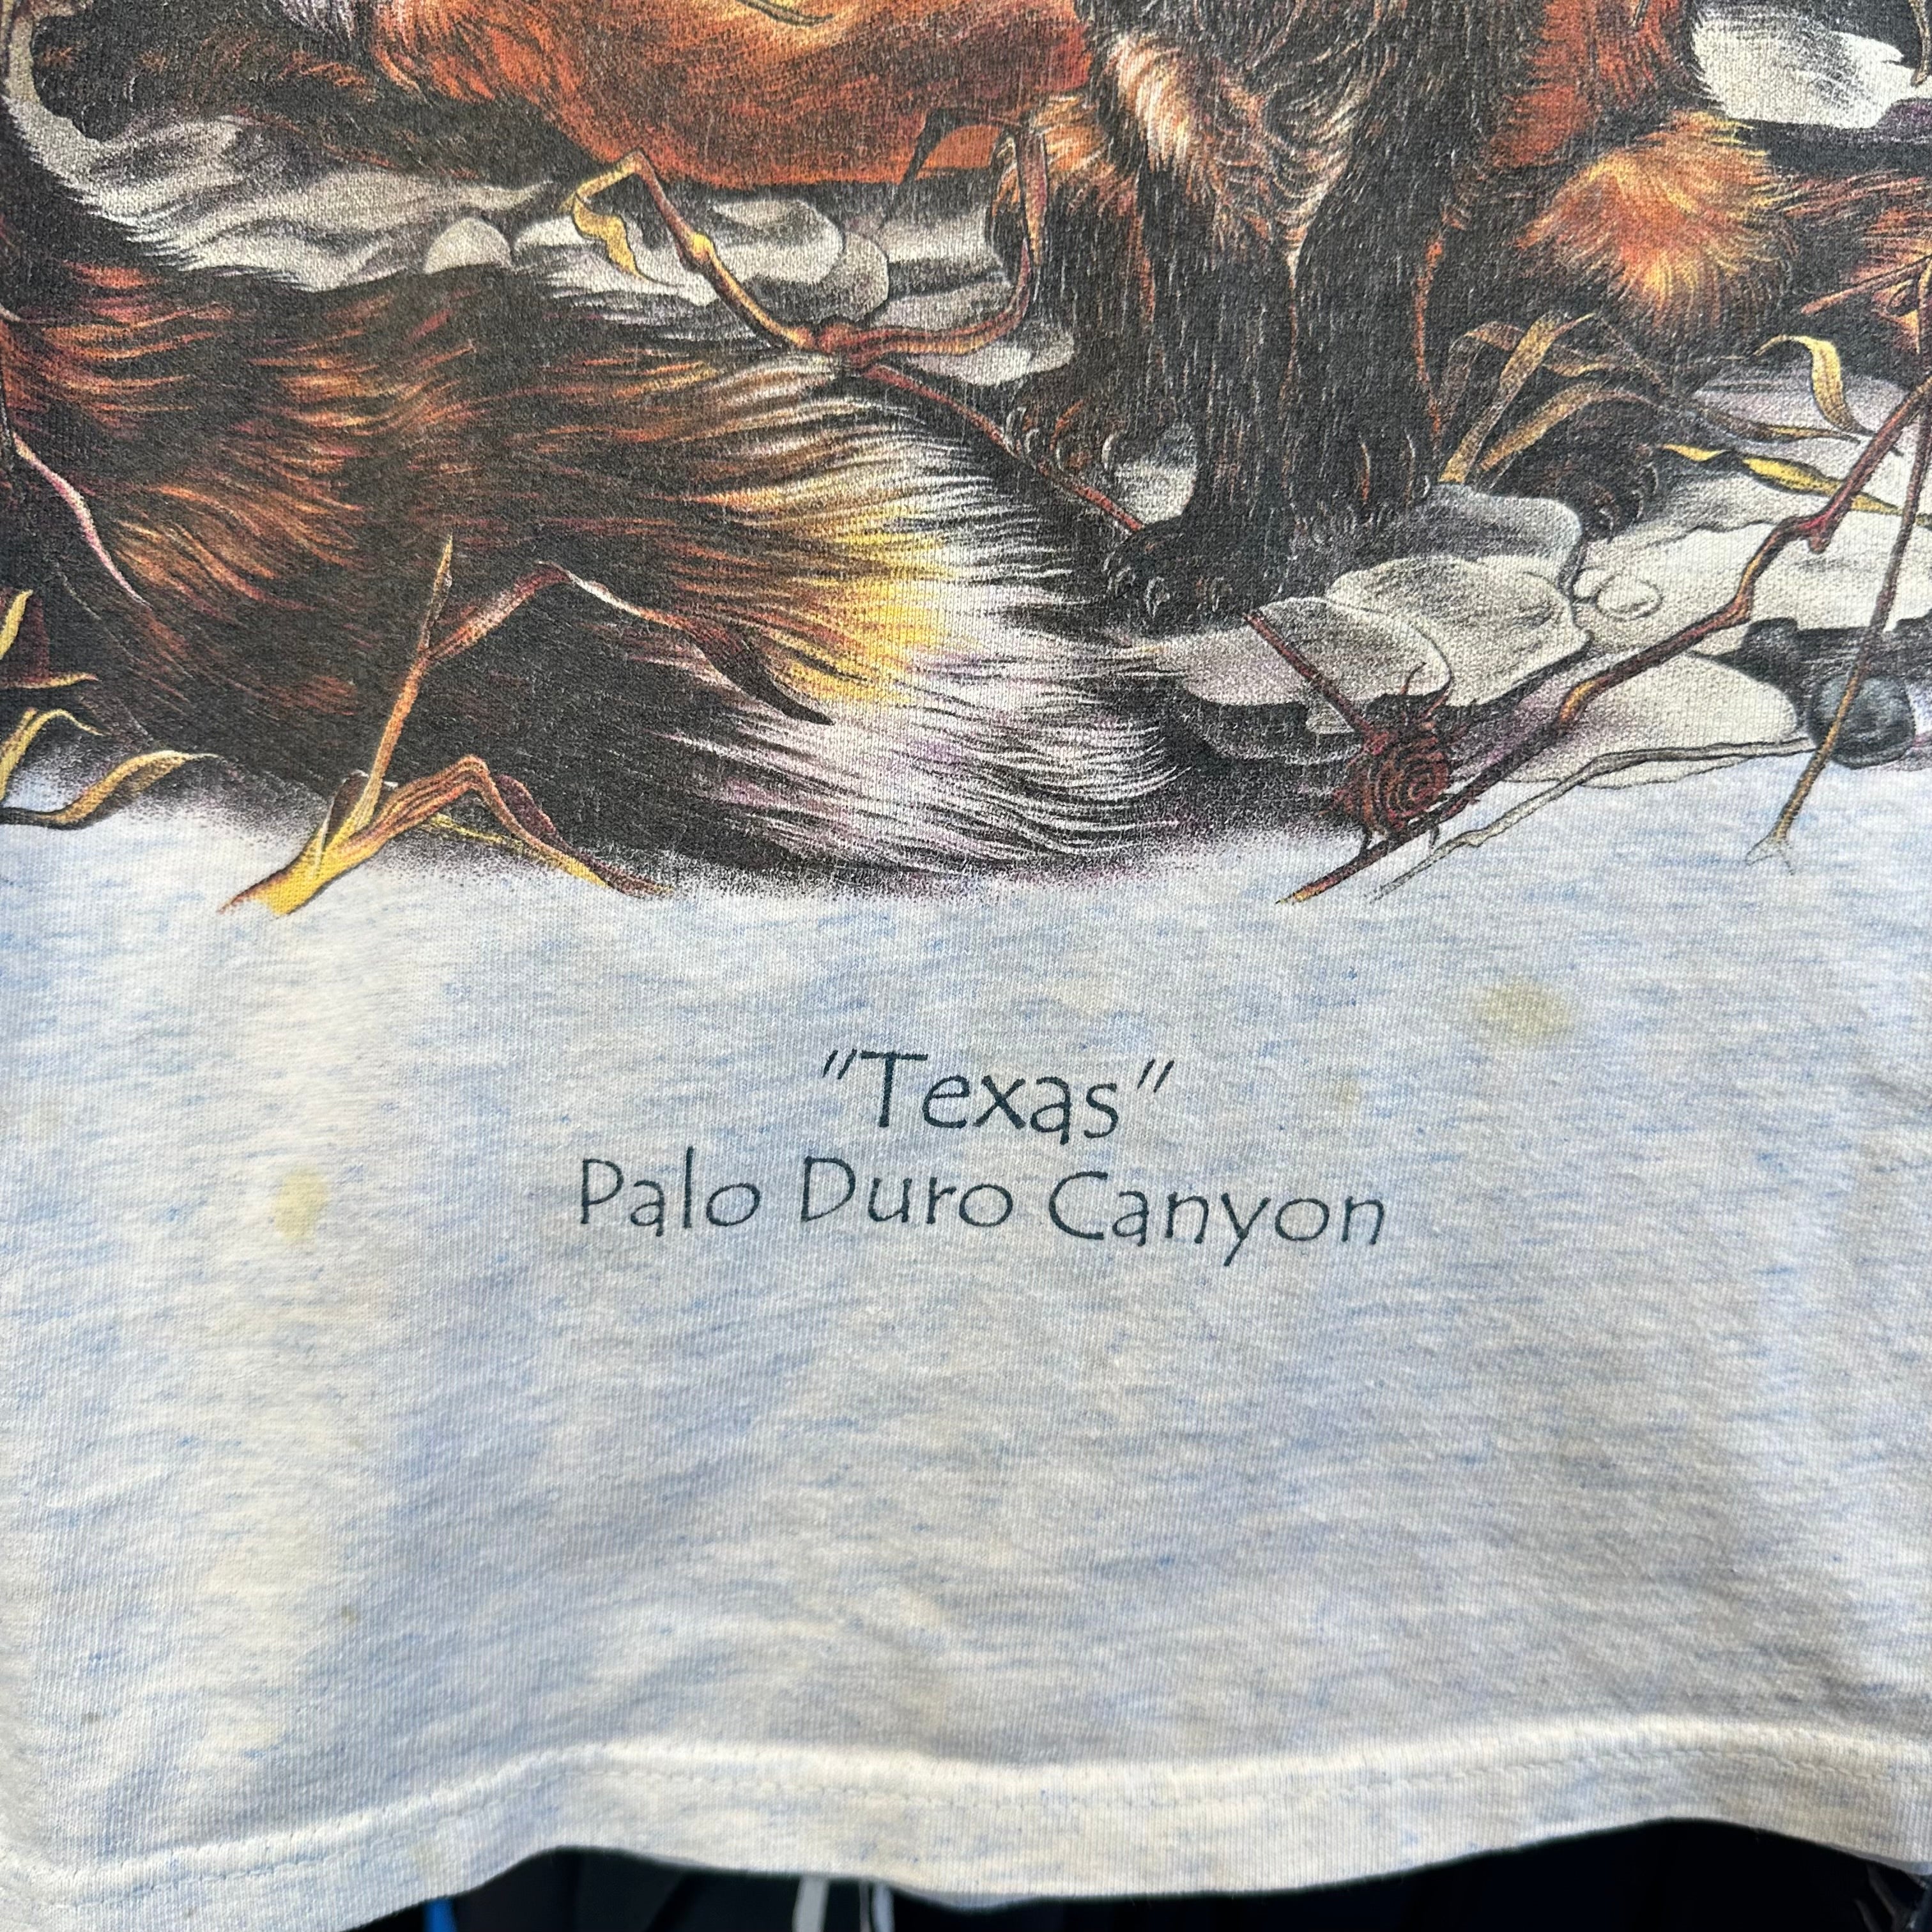 Texas Foxes T-Shirt